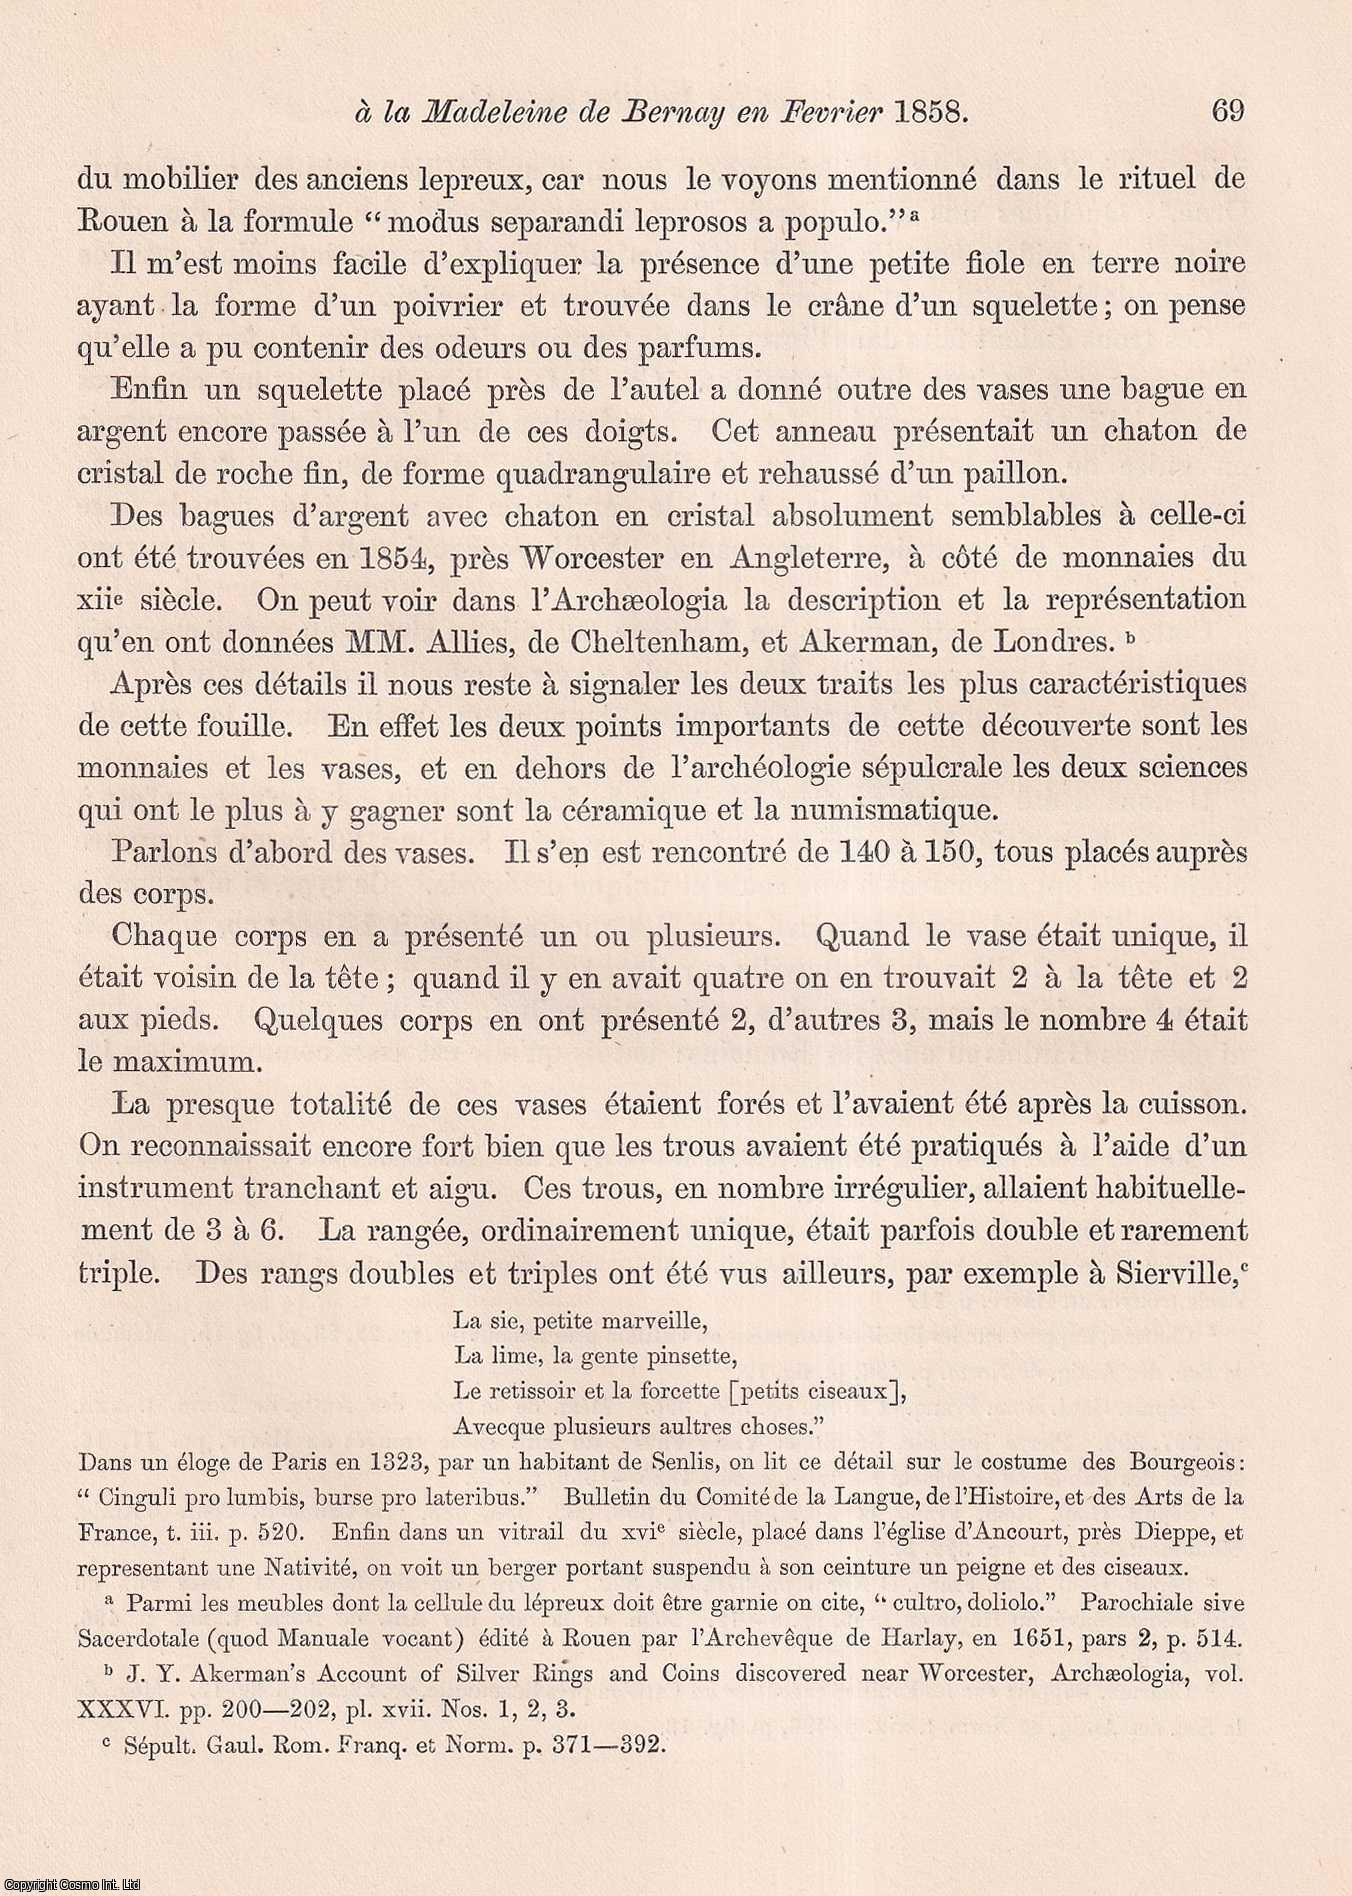 l'Abbe Cochet, Hon. F.S.A. - Note sur les Fouilles executees a la Madeleine de Bernay (Normandie) en Fevrier 1858. An uncommon original article from the journal Archaeologia, 1860.